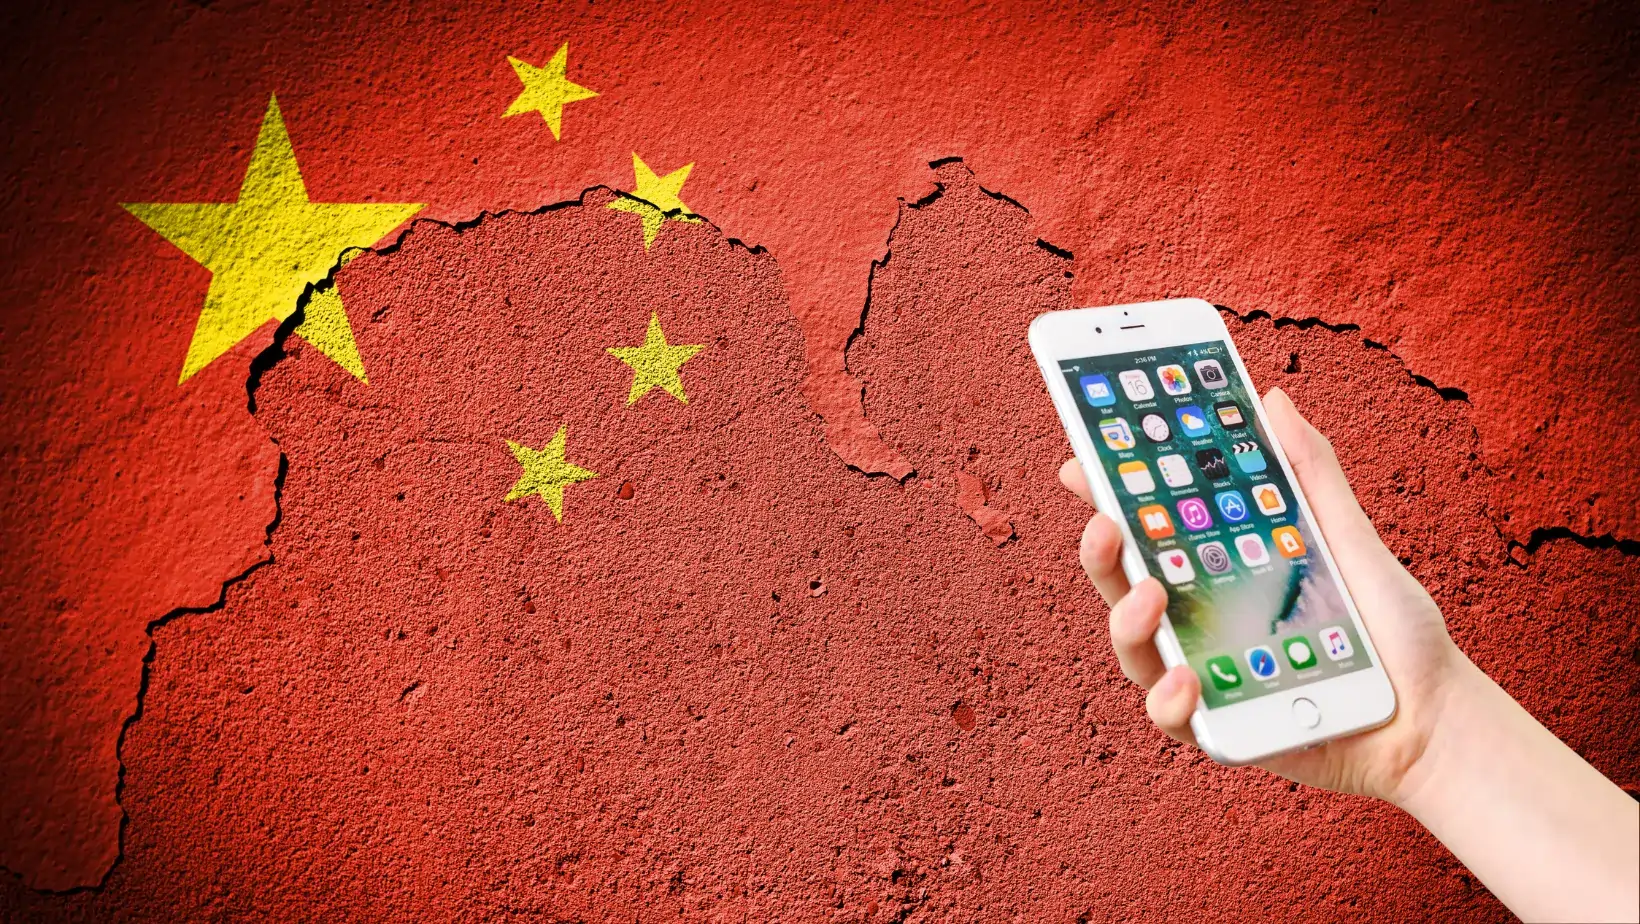 בסין אוסרים על פקידי ממשל להחזיק בסמארטפון שיוצר מחוץ לגבולות המדינה